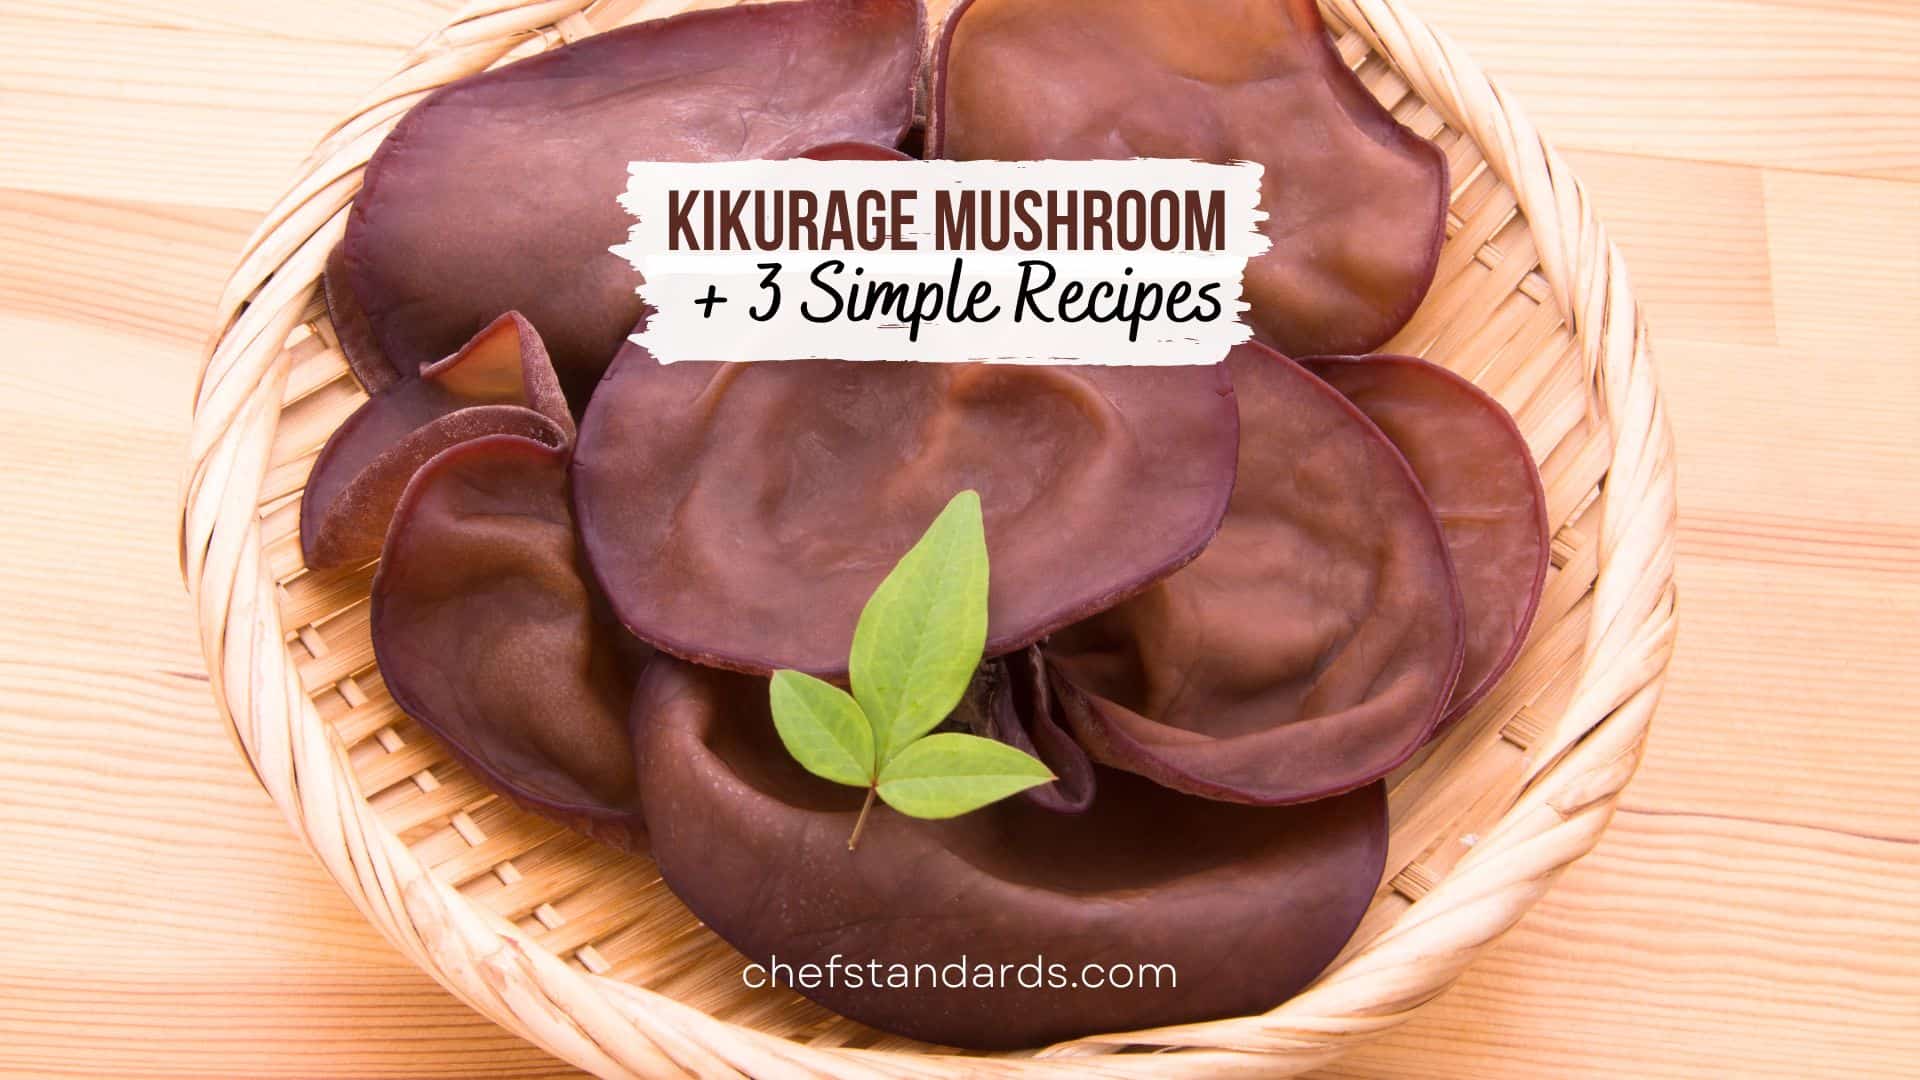 All About Kikurage Mushroom